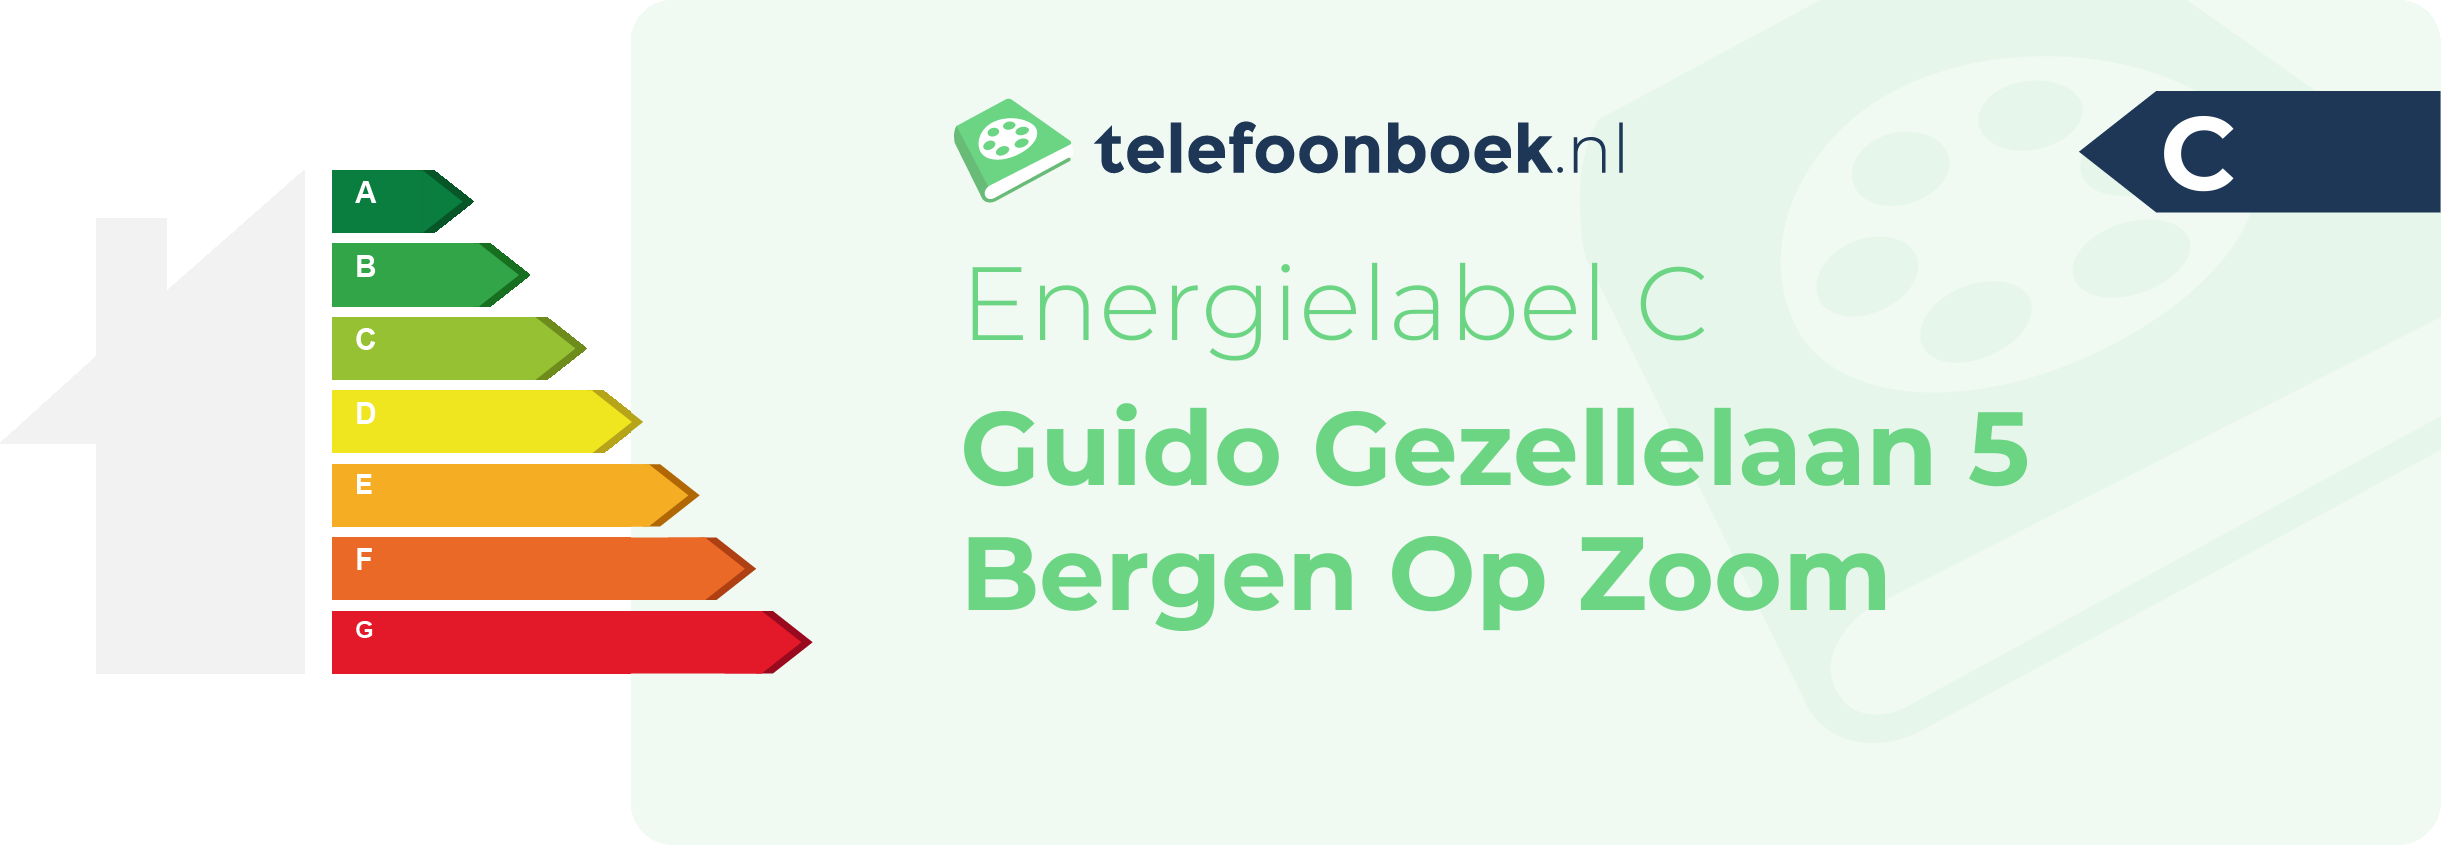 Energielabel Guido Gezellelaan 5 Bergen Op Zoom